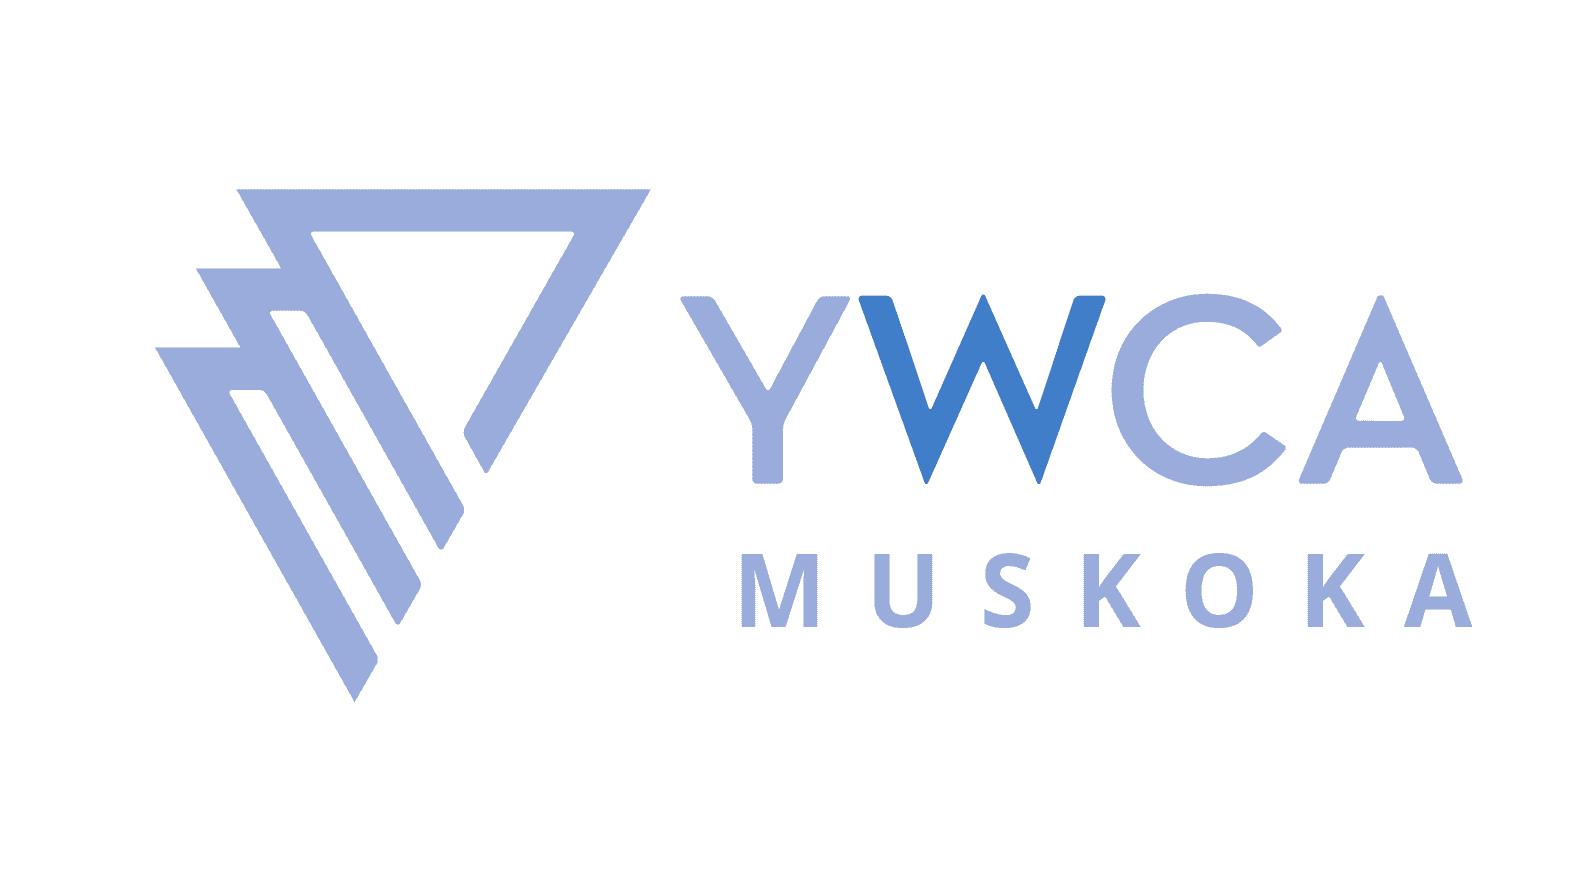 YWCA Muskoka's Logo